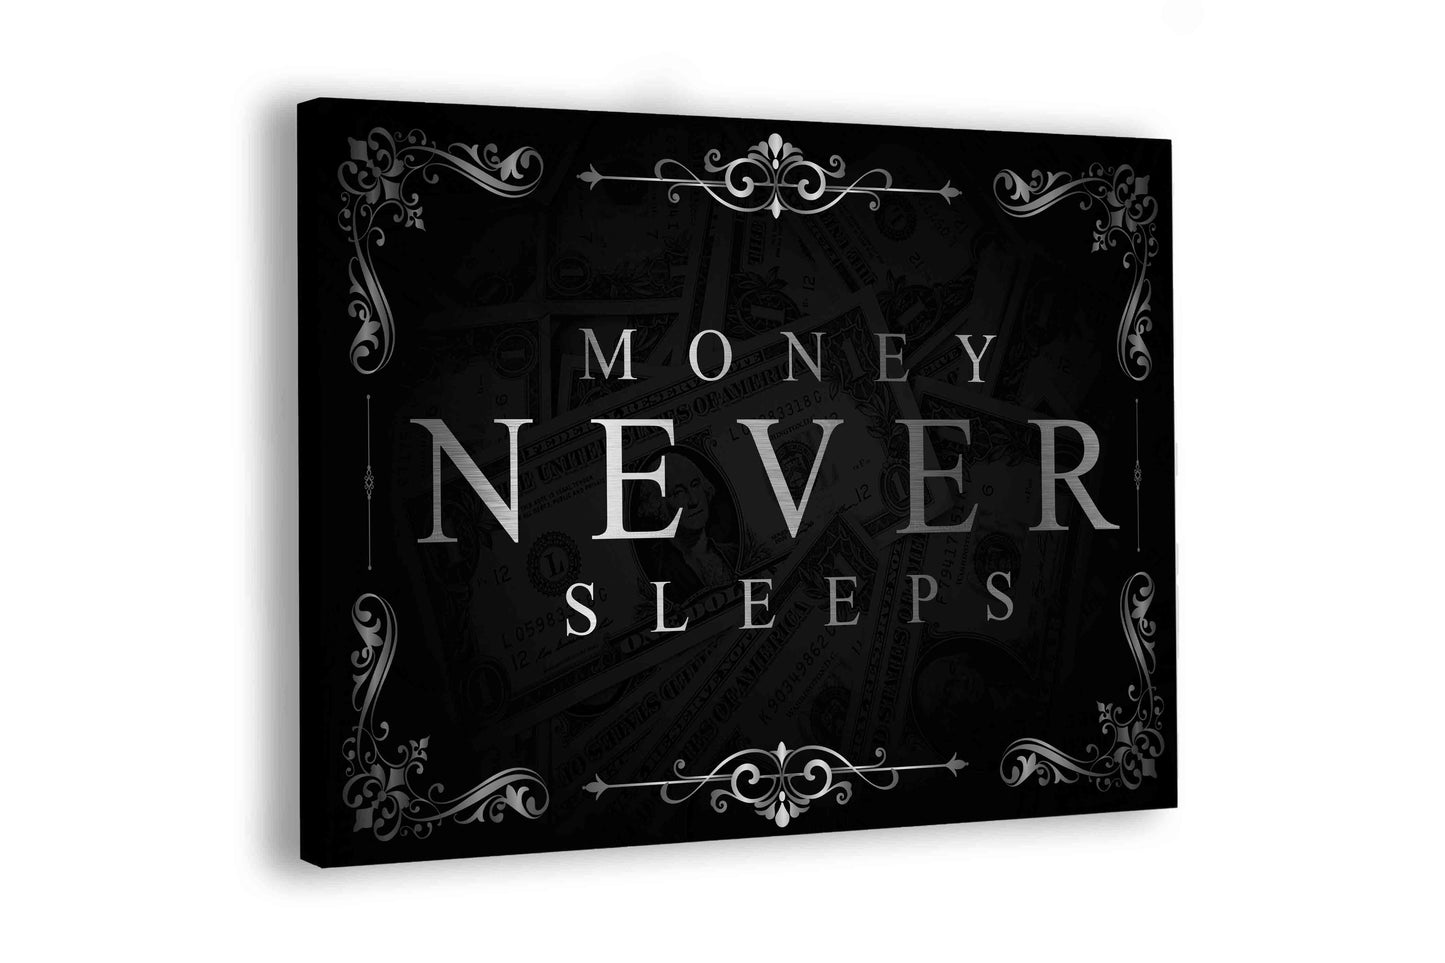 Money never sleeps